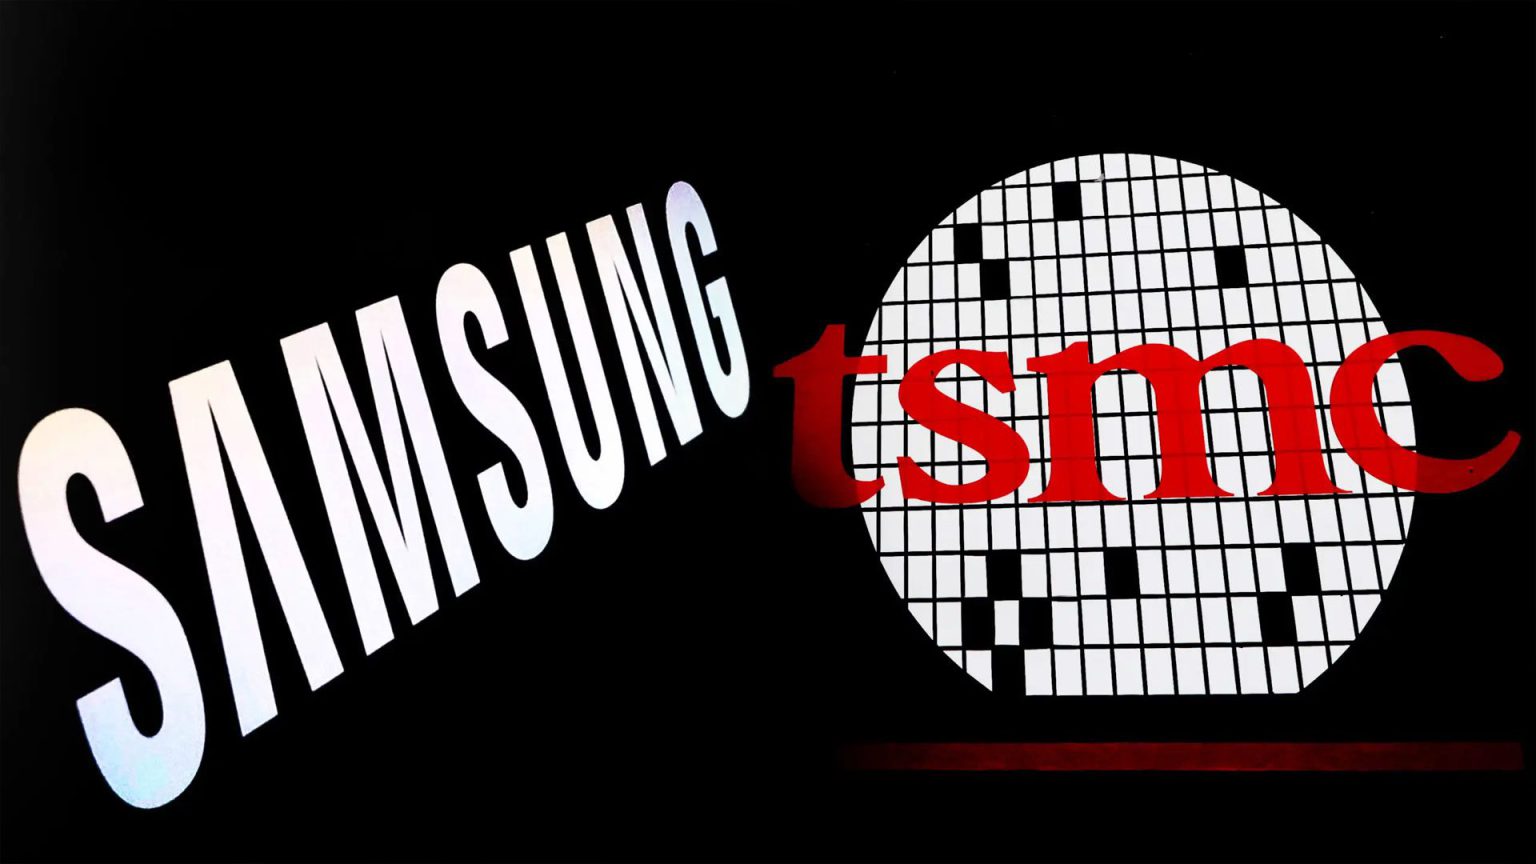 Morris Chang, fundador de TSMC, ha asegurado que Samsung Electronics es un fuerte competidor para ellos porque comparten una cultura similar.